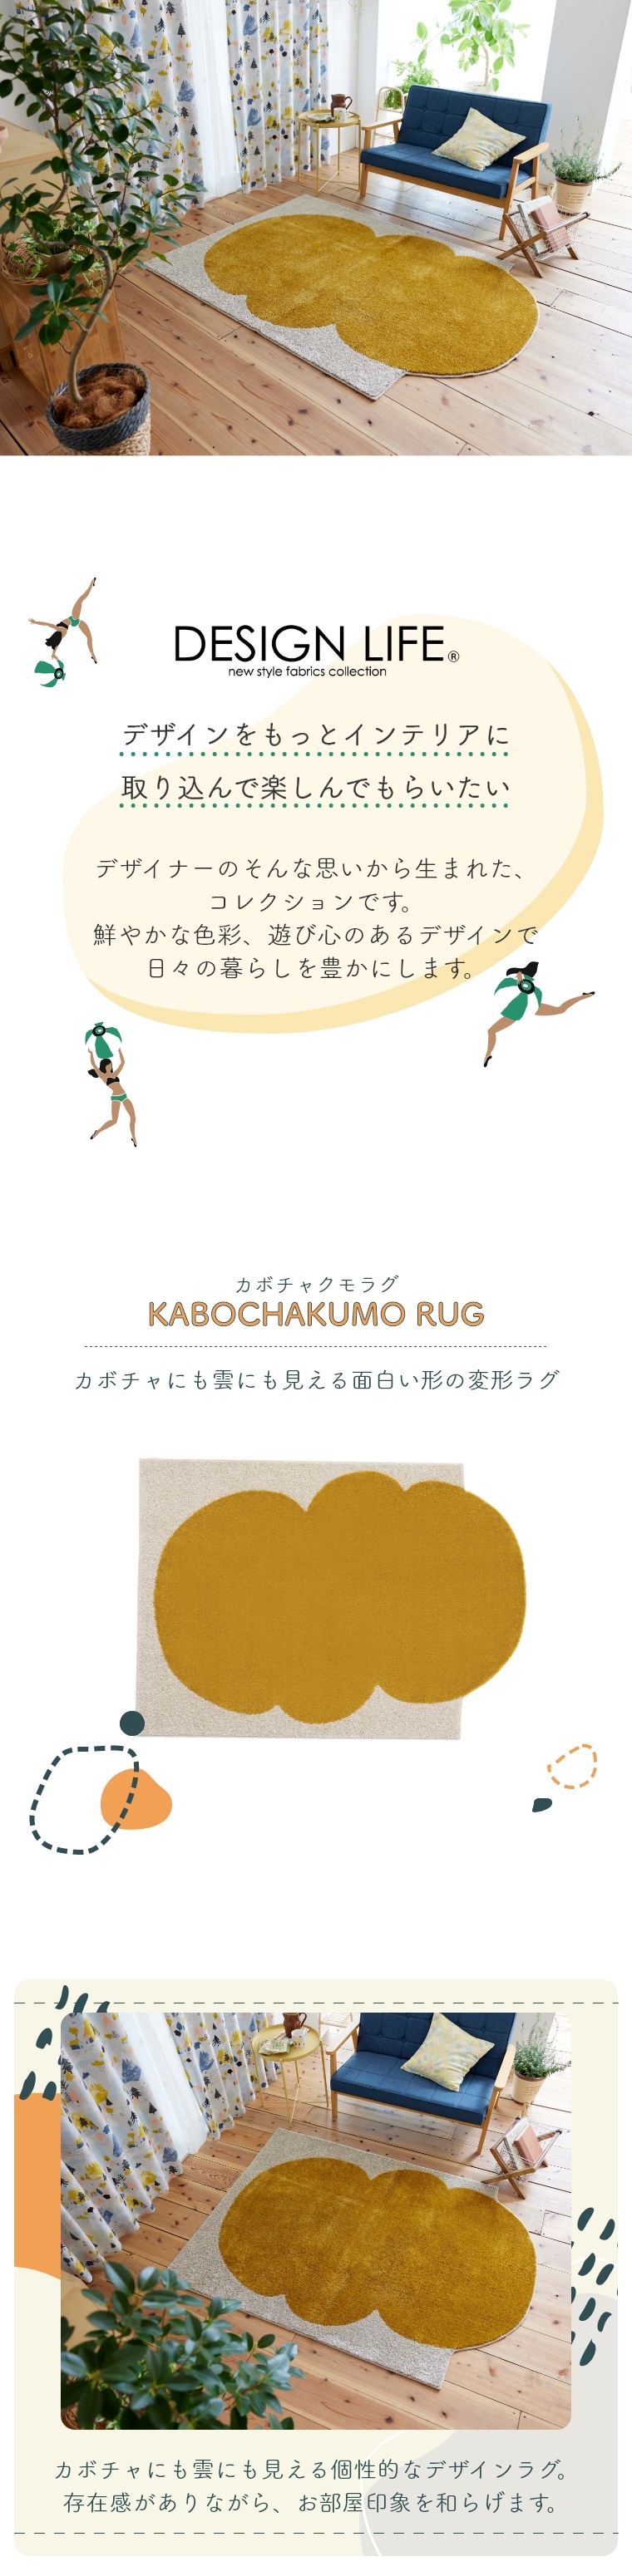 KABOCHAKUMO RUG カボチャクモラグ 約130×185cm 134-76076